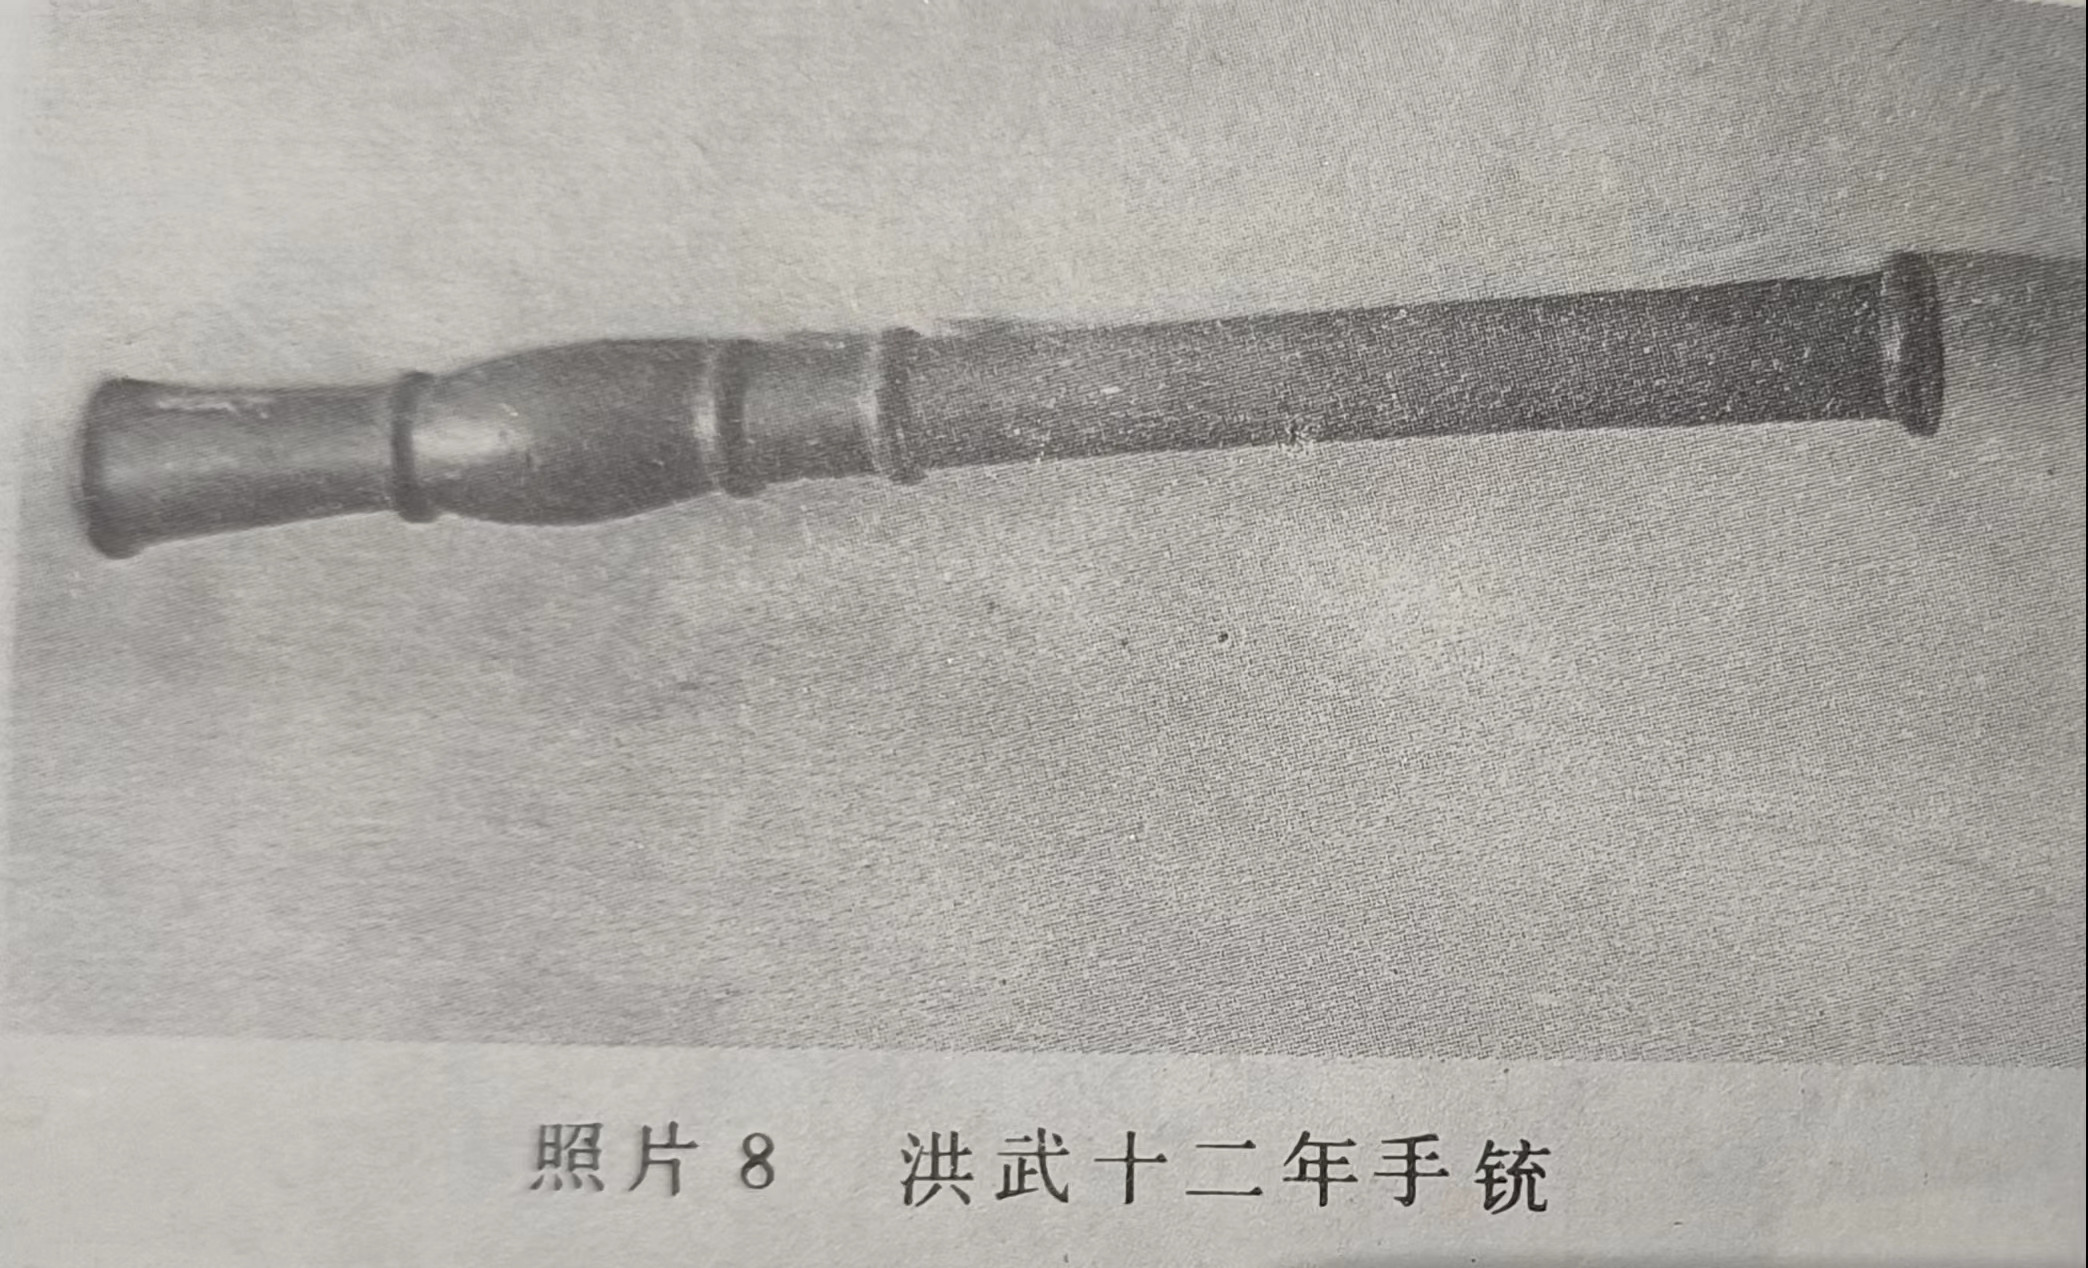 明代手铳 引自《中国火器史》